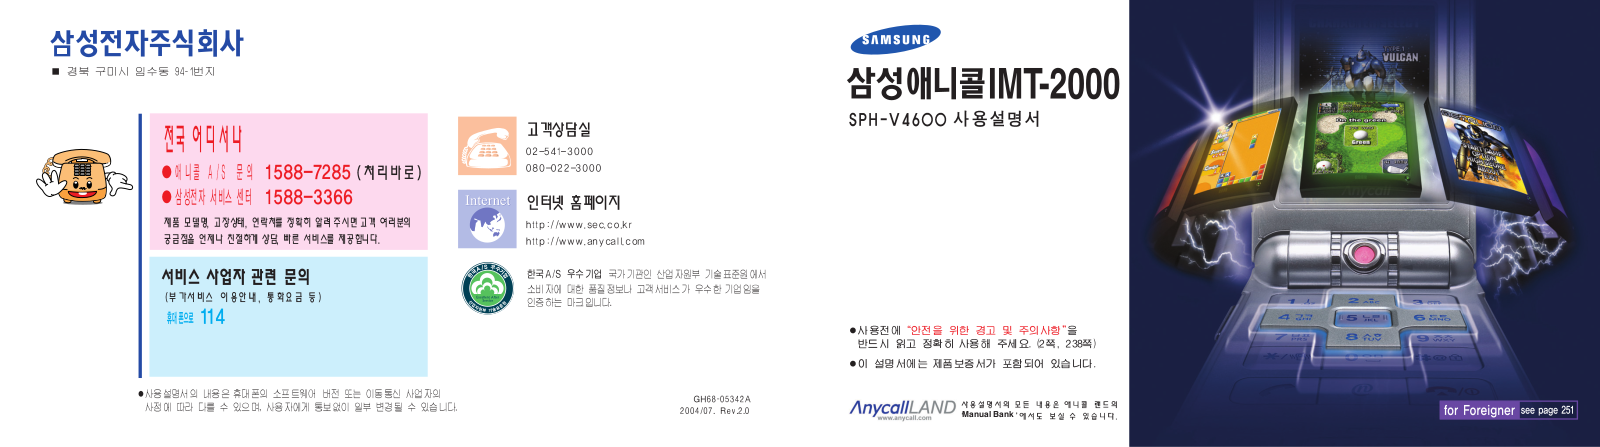 Samsung SPH-V4600 User Manual